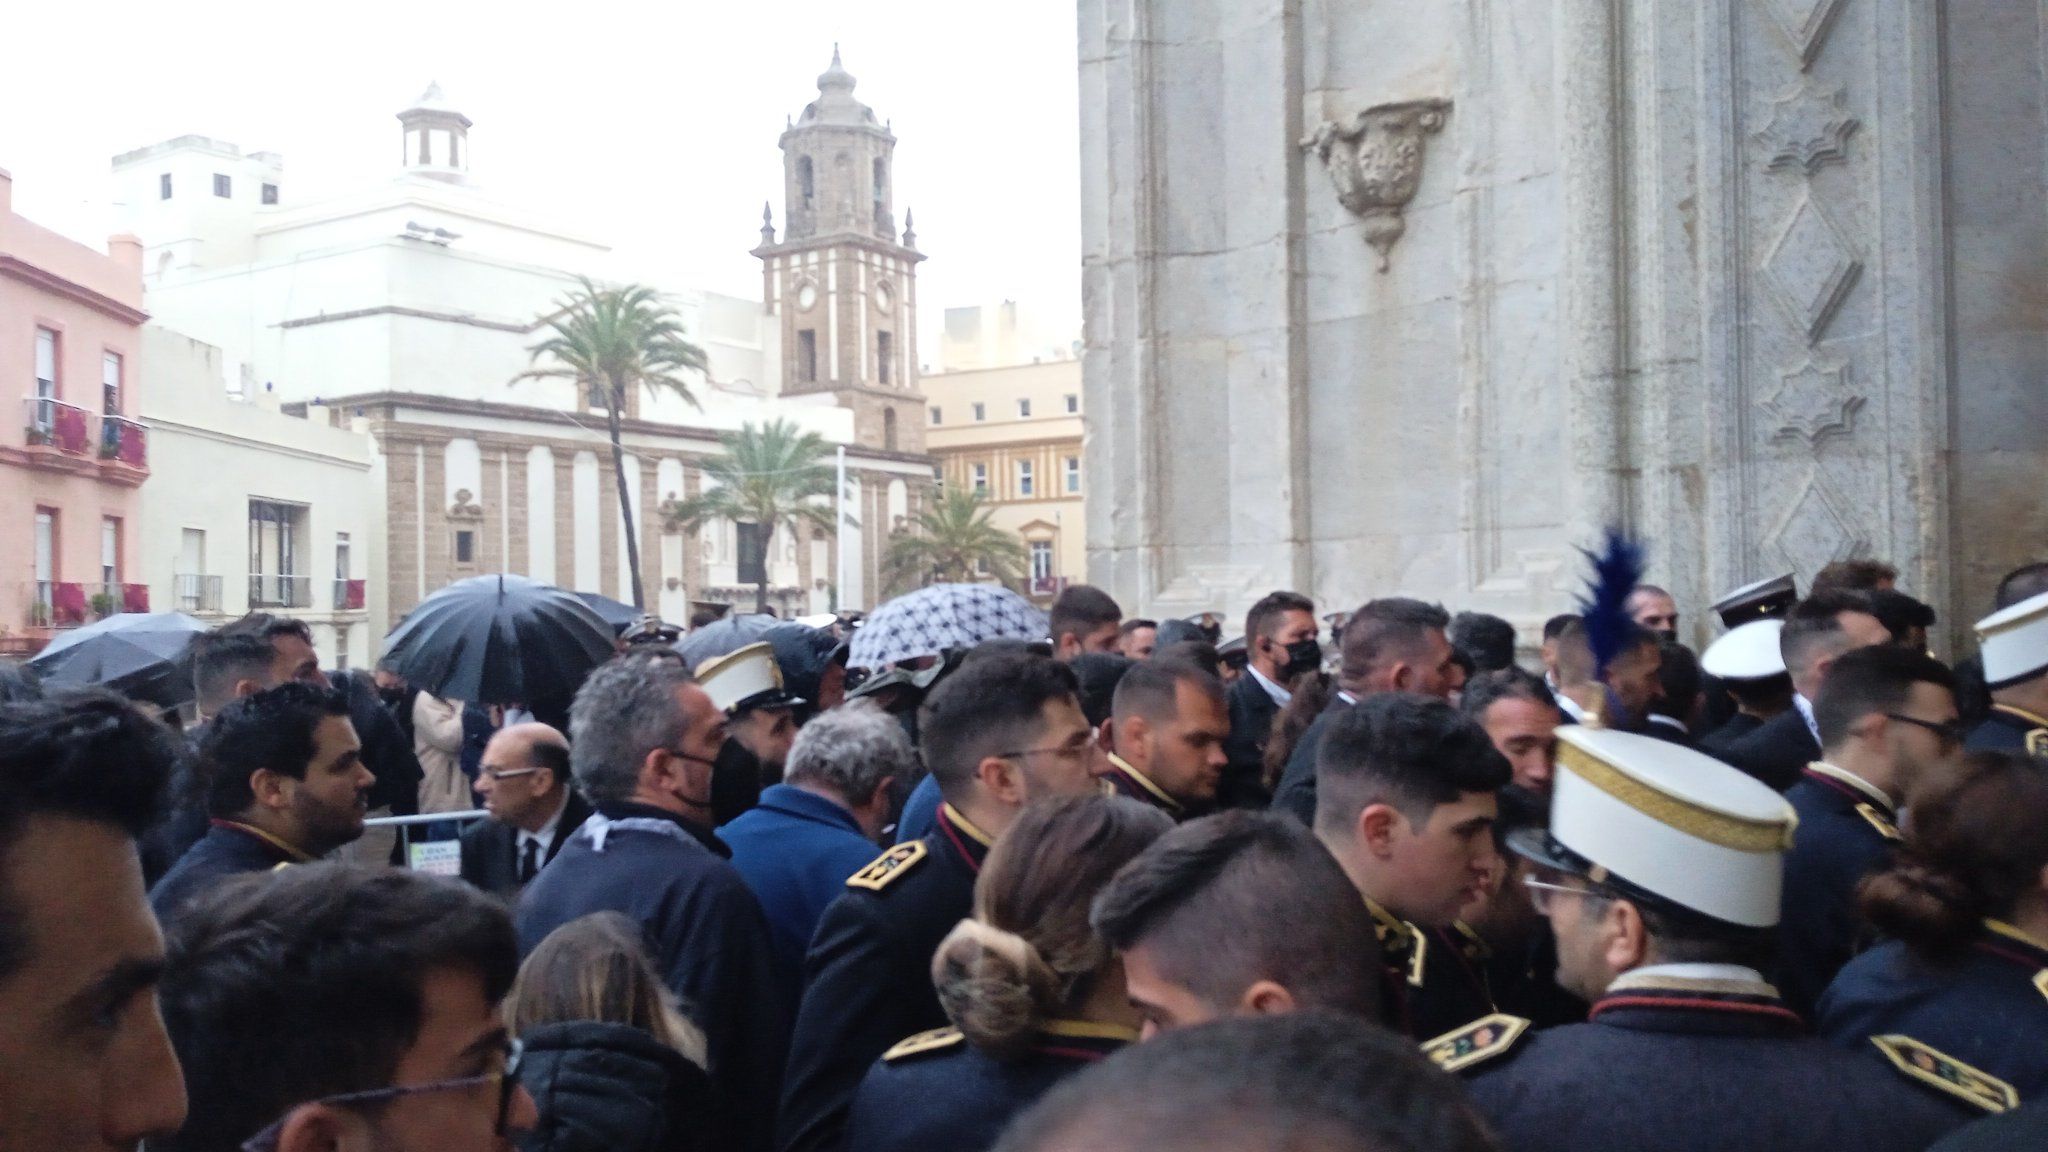 Denuncian el "trato inhumano" a los músicos en la Catedral de Cádiz: "Había niños chorreando y tiritando".  TWITTER